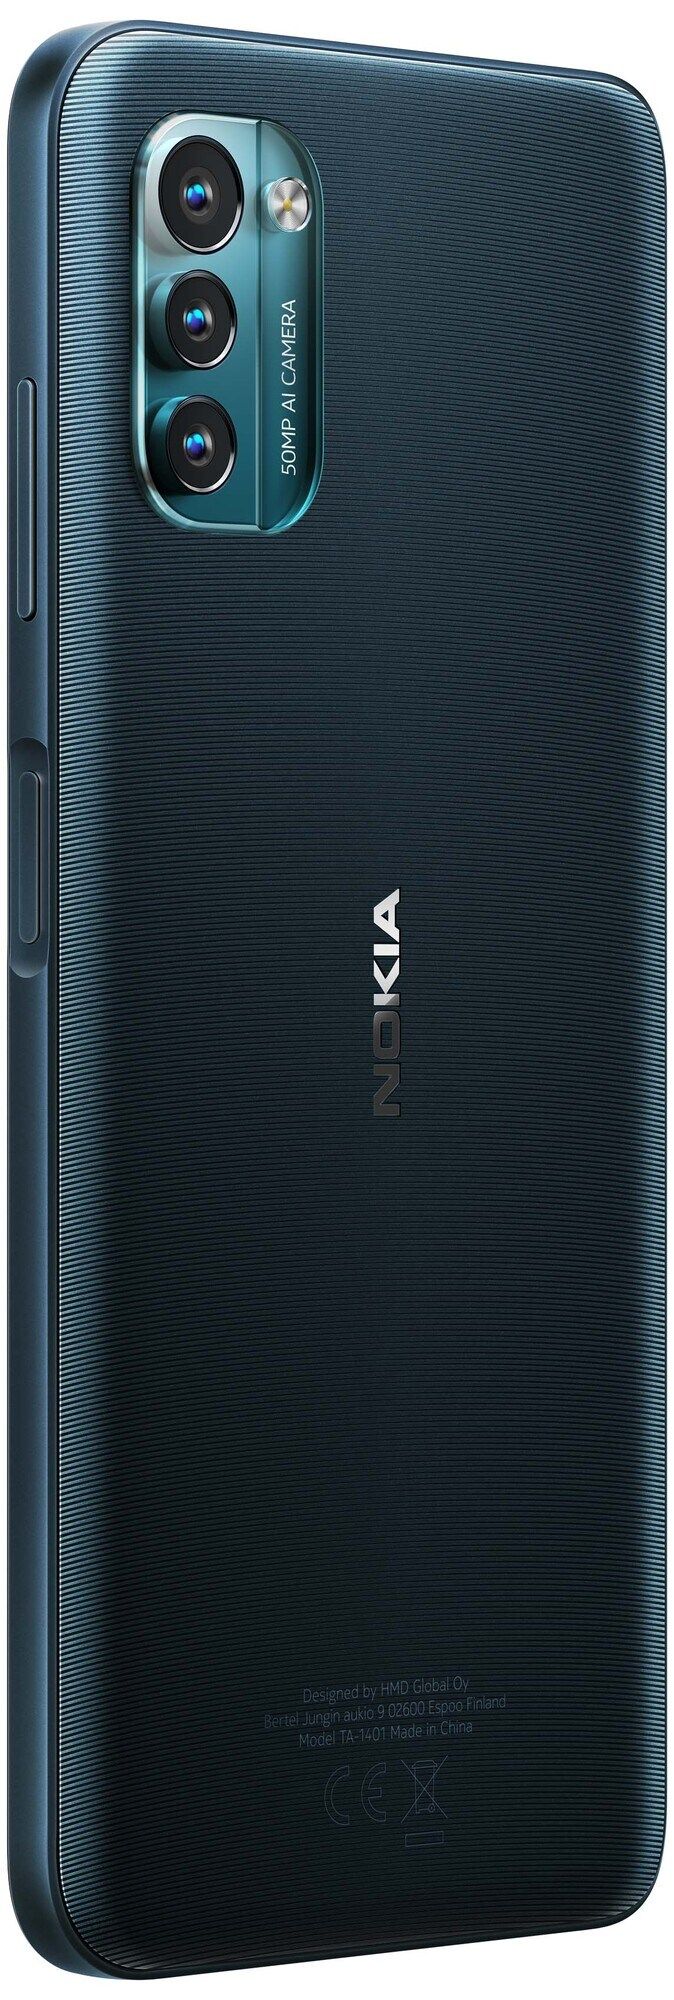 ภาพเรนเดอร์ Nokia G21 เผยหน้าจอ Notch หยดน้ำ, กล้องหลัง 3 ตัว และตัวเครื่องมีให้เลือก 3 สี